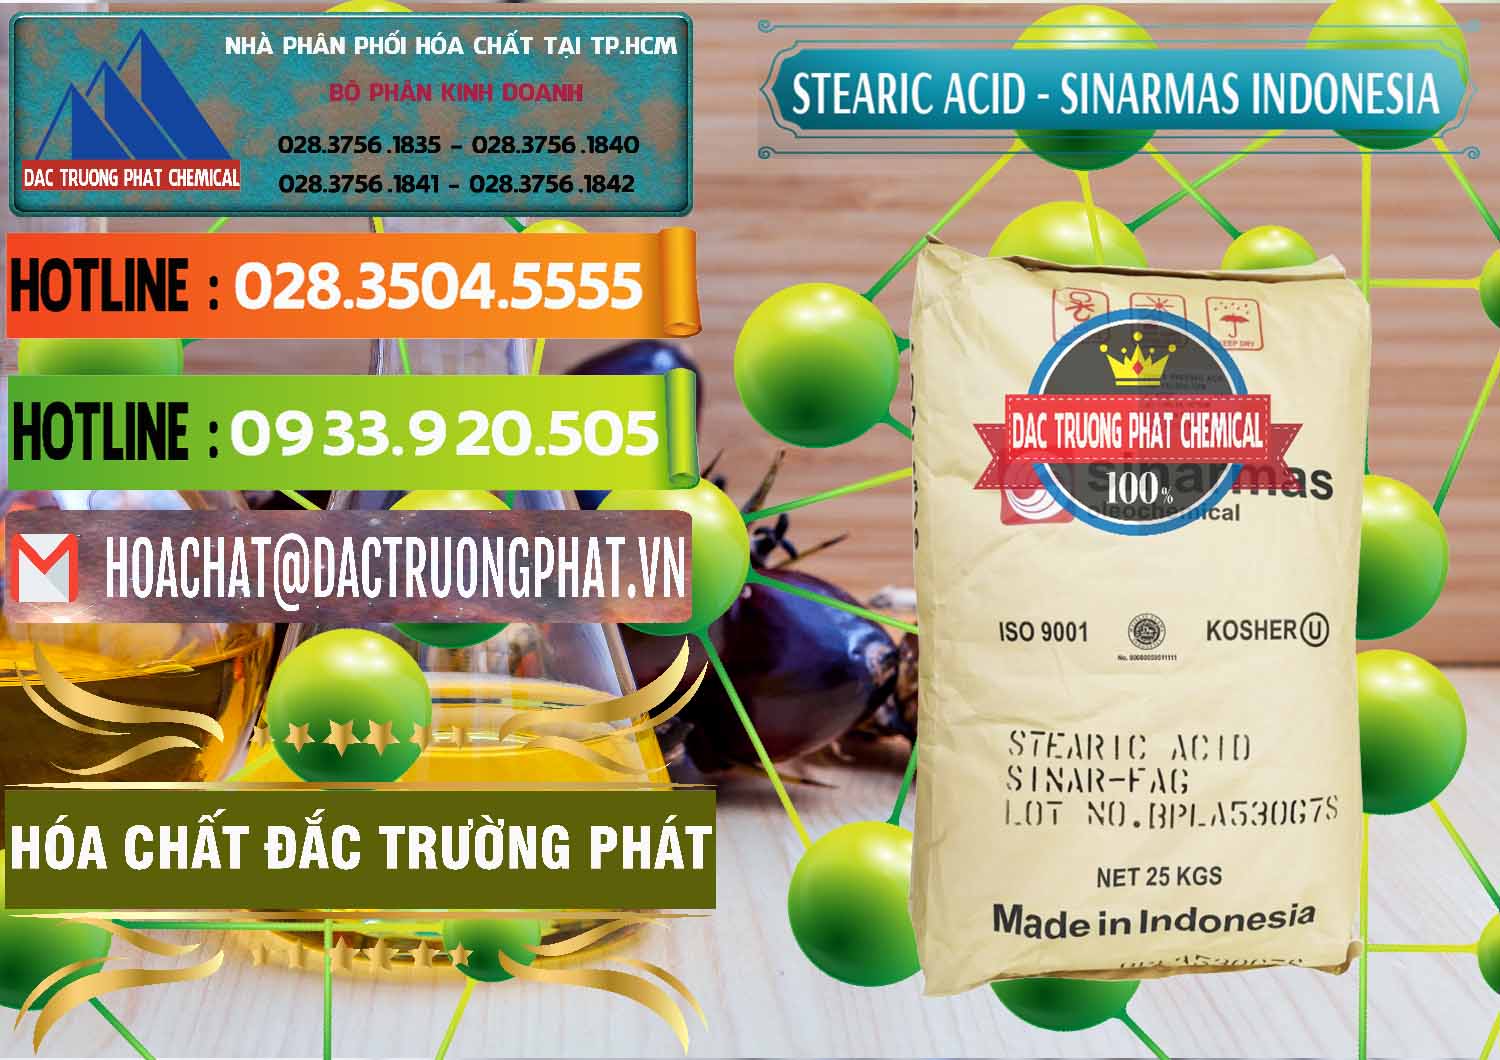 Cty chuyên bán - phân phối Axit Stearic - Stearic Acid Sinarmas Indonesia - 0389 - Cty chuyên bán _ cung cấp hóa chất tại TP.HCM - cungcaphoachat.com.vn